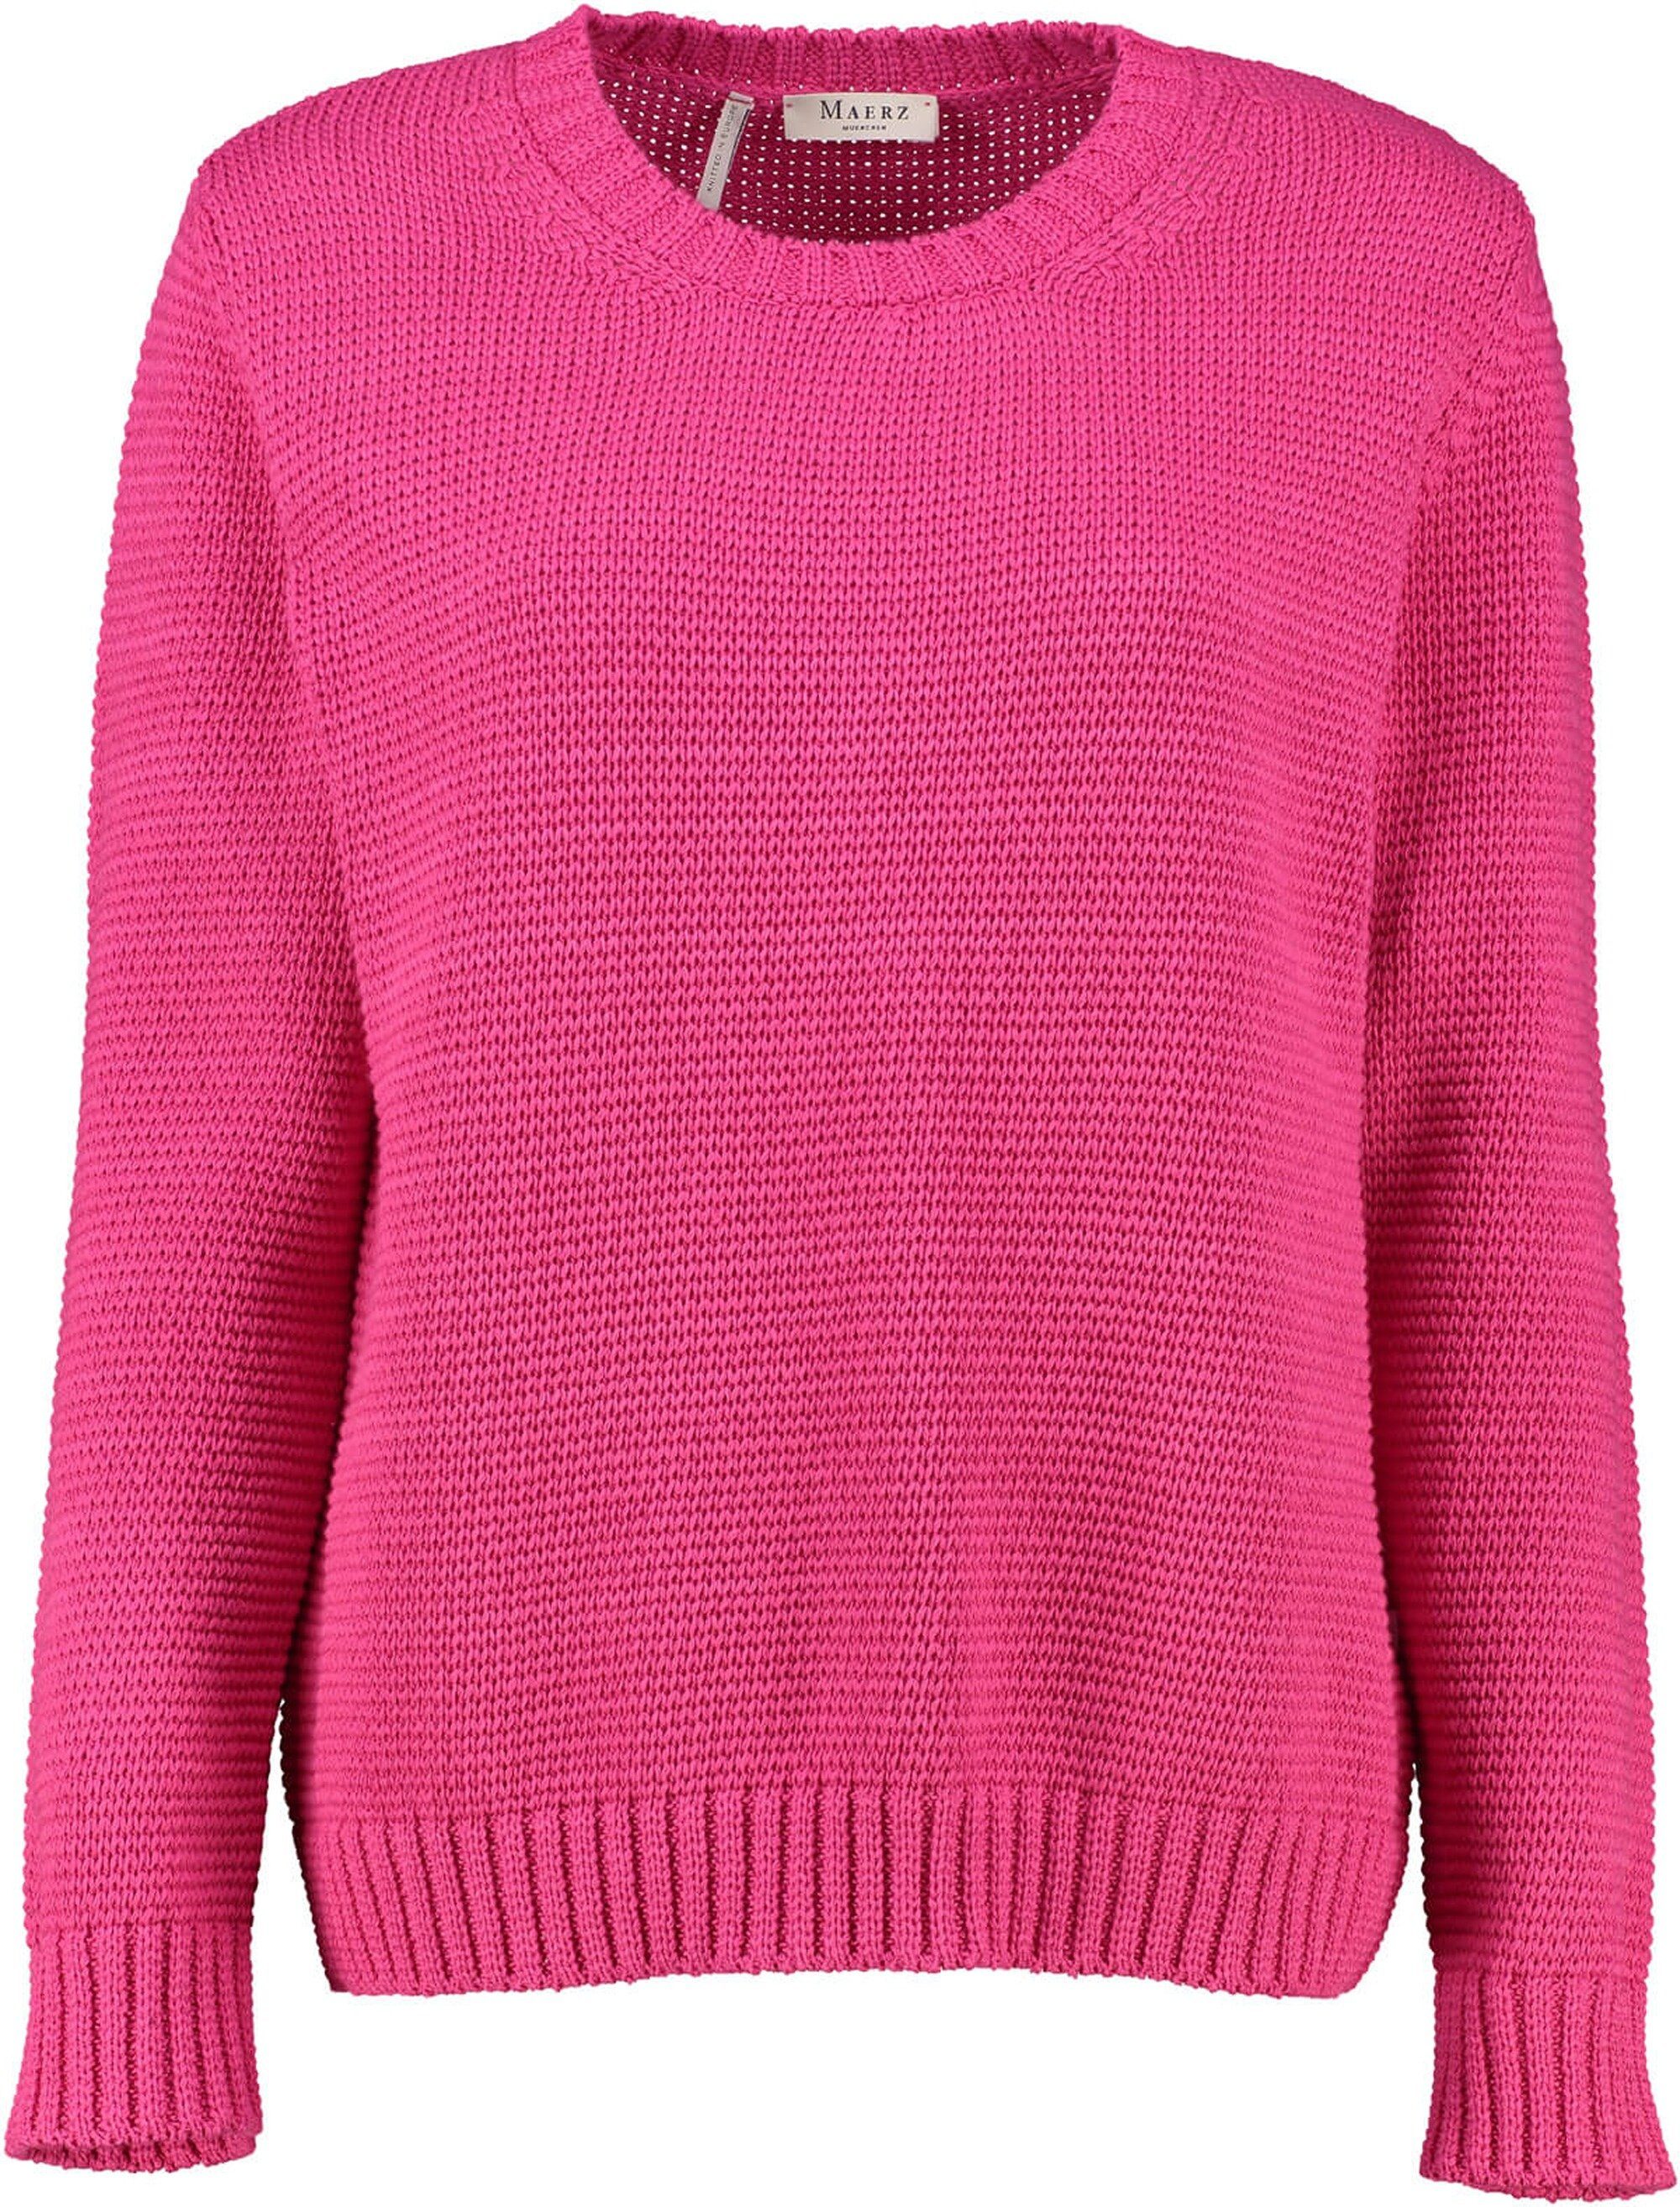 MAERZ Muenchen Strickpullover MAERZ Pullover pink in softer  Organic-Baumwoll-Qualität